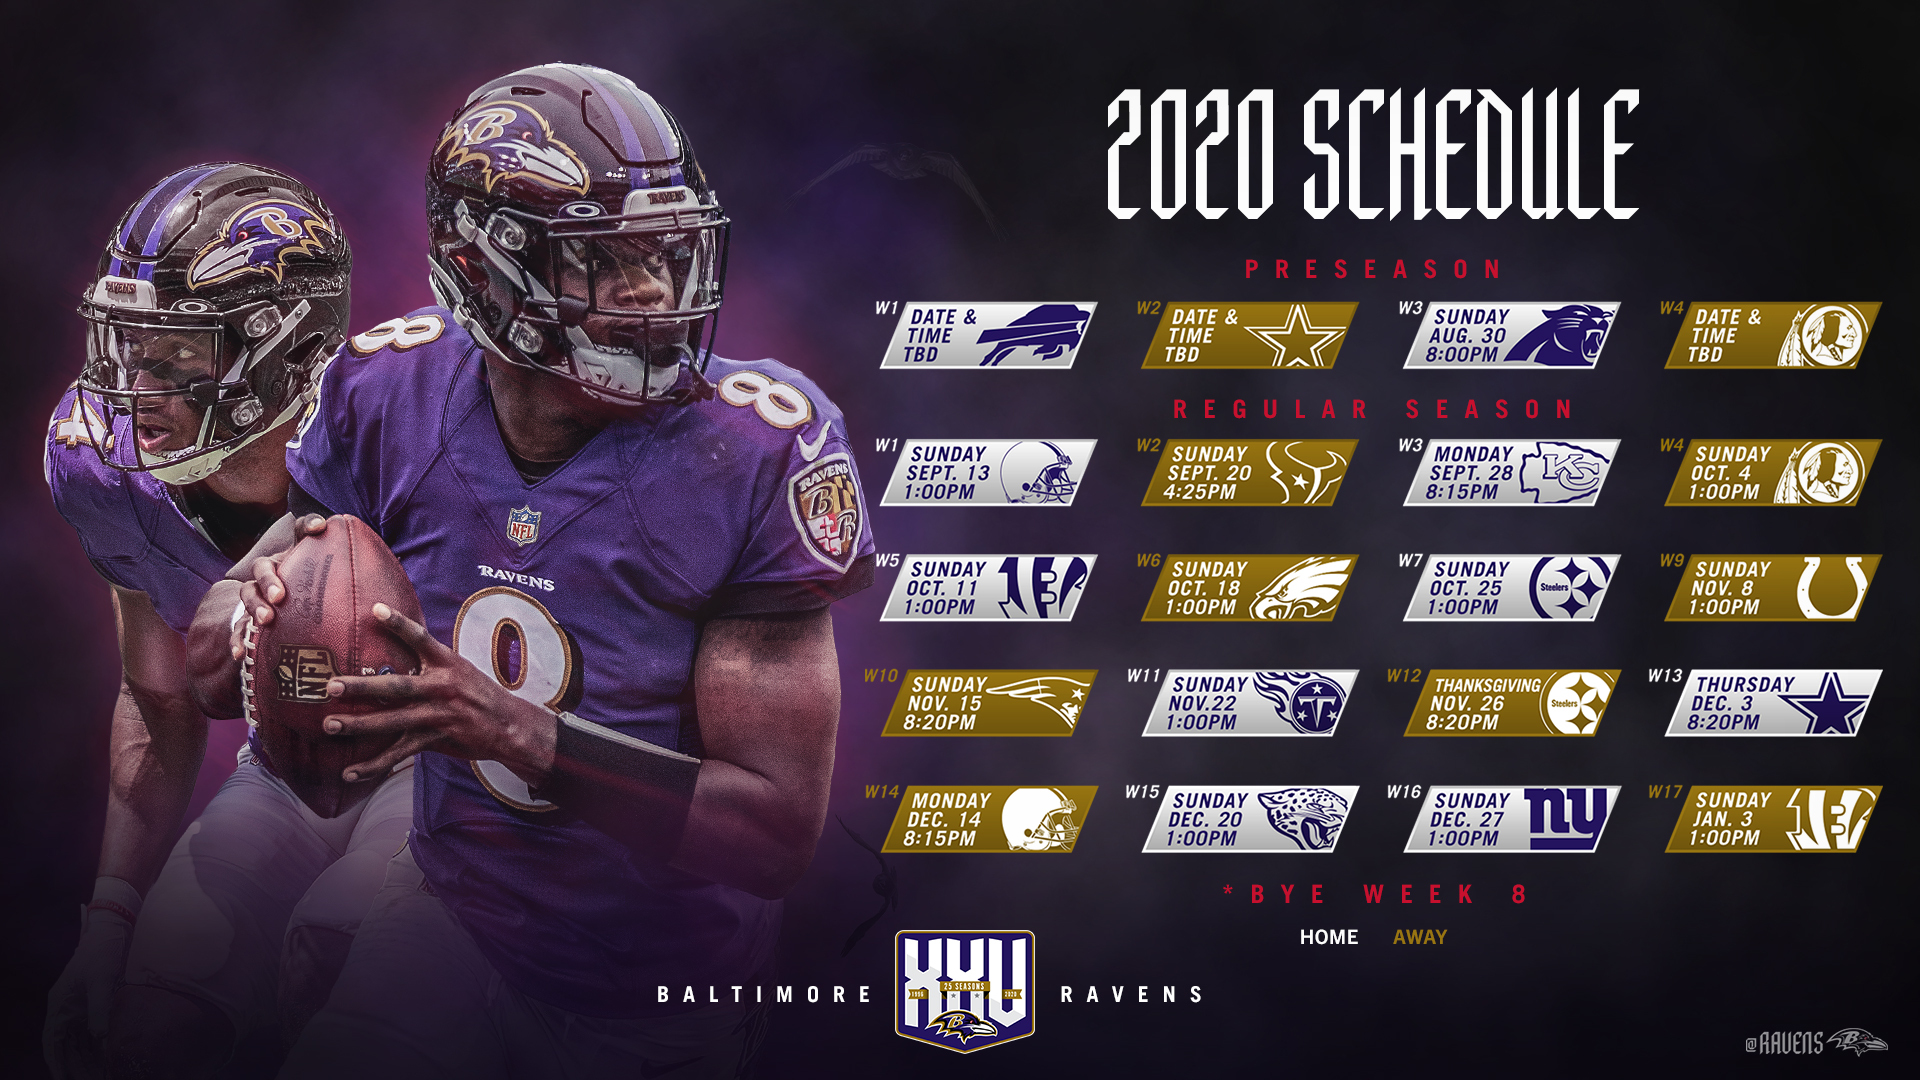 Ravens 2020 schedule released - Marylandsportsblog.com